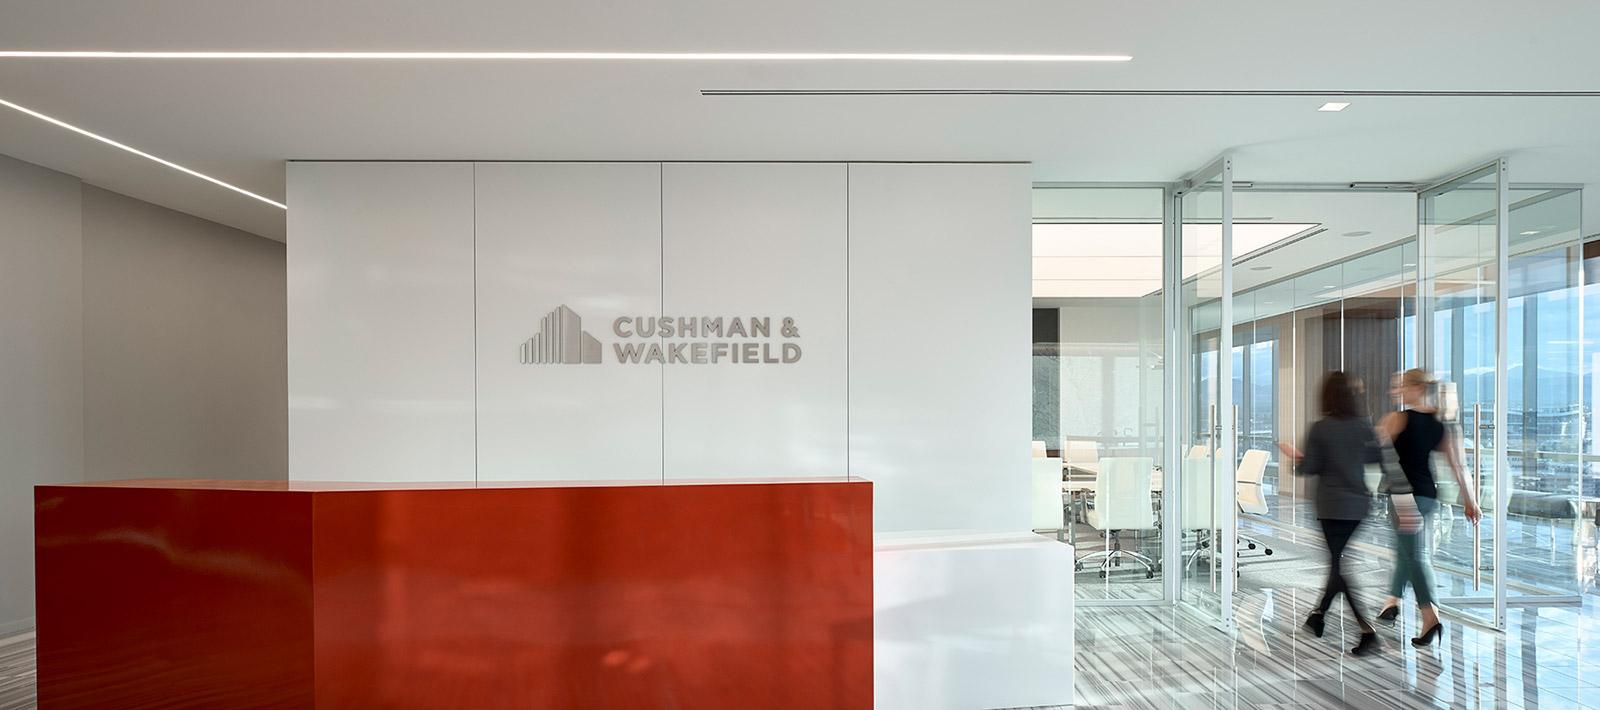 Cushman & Wakefield Reception Area ID+ Seem